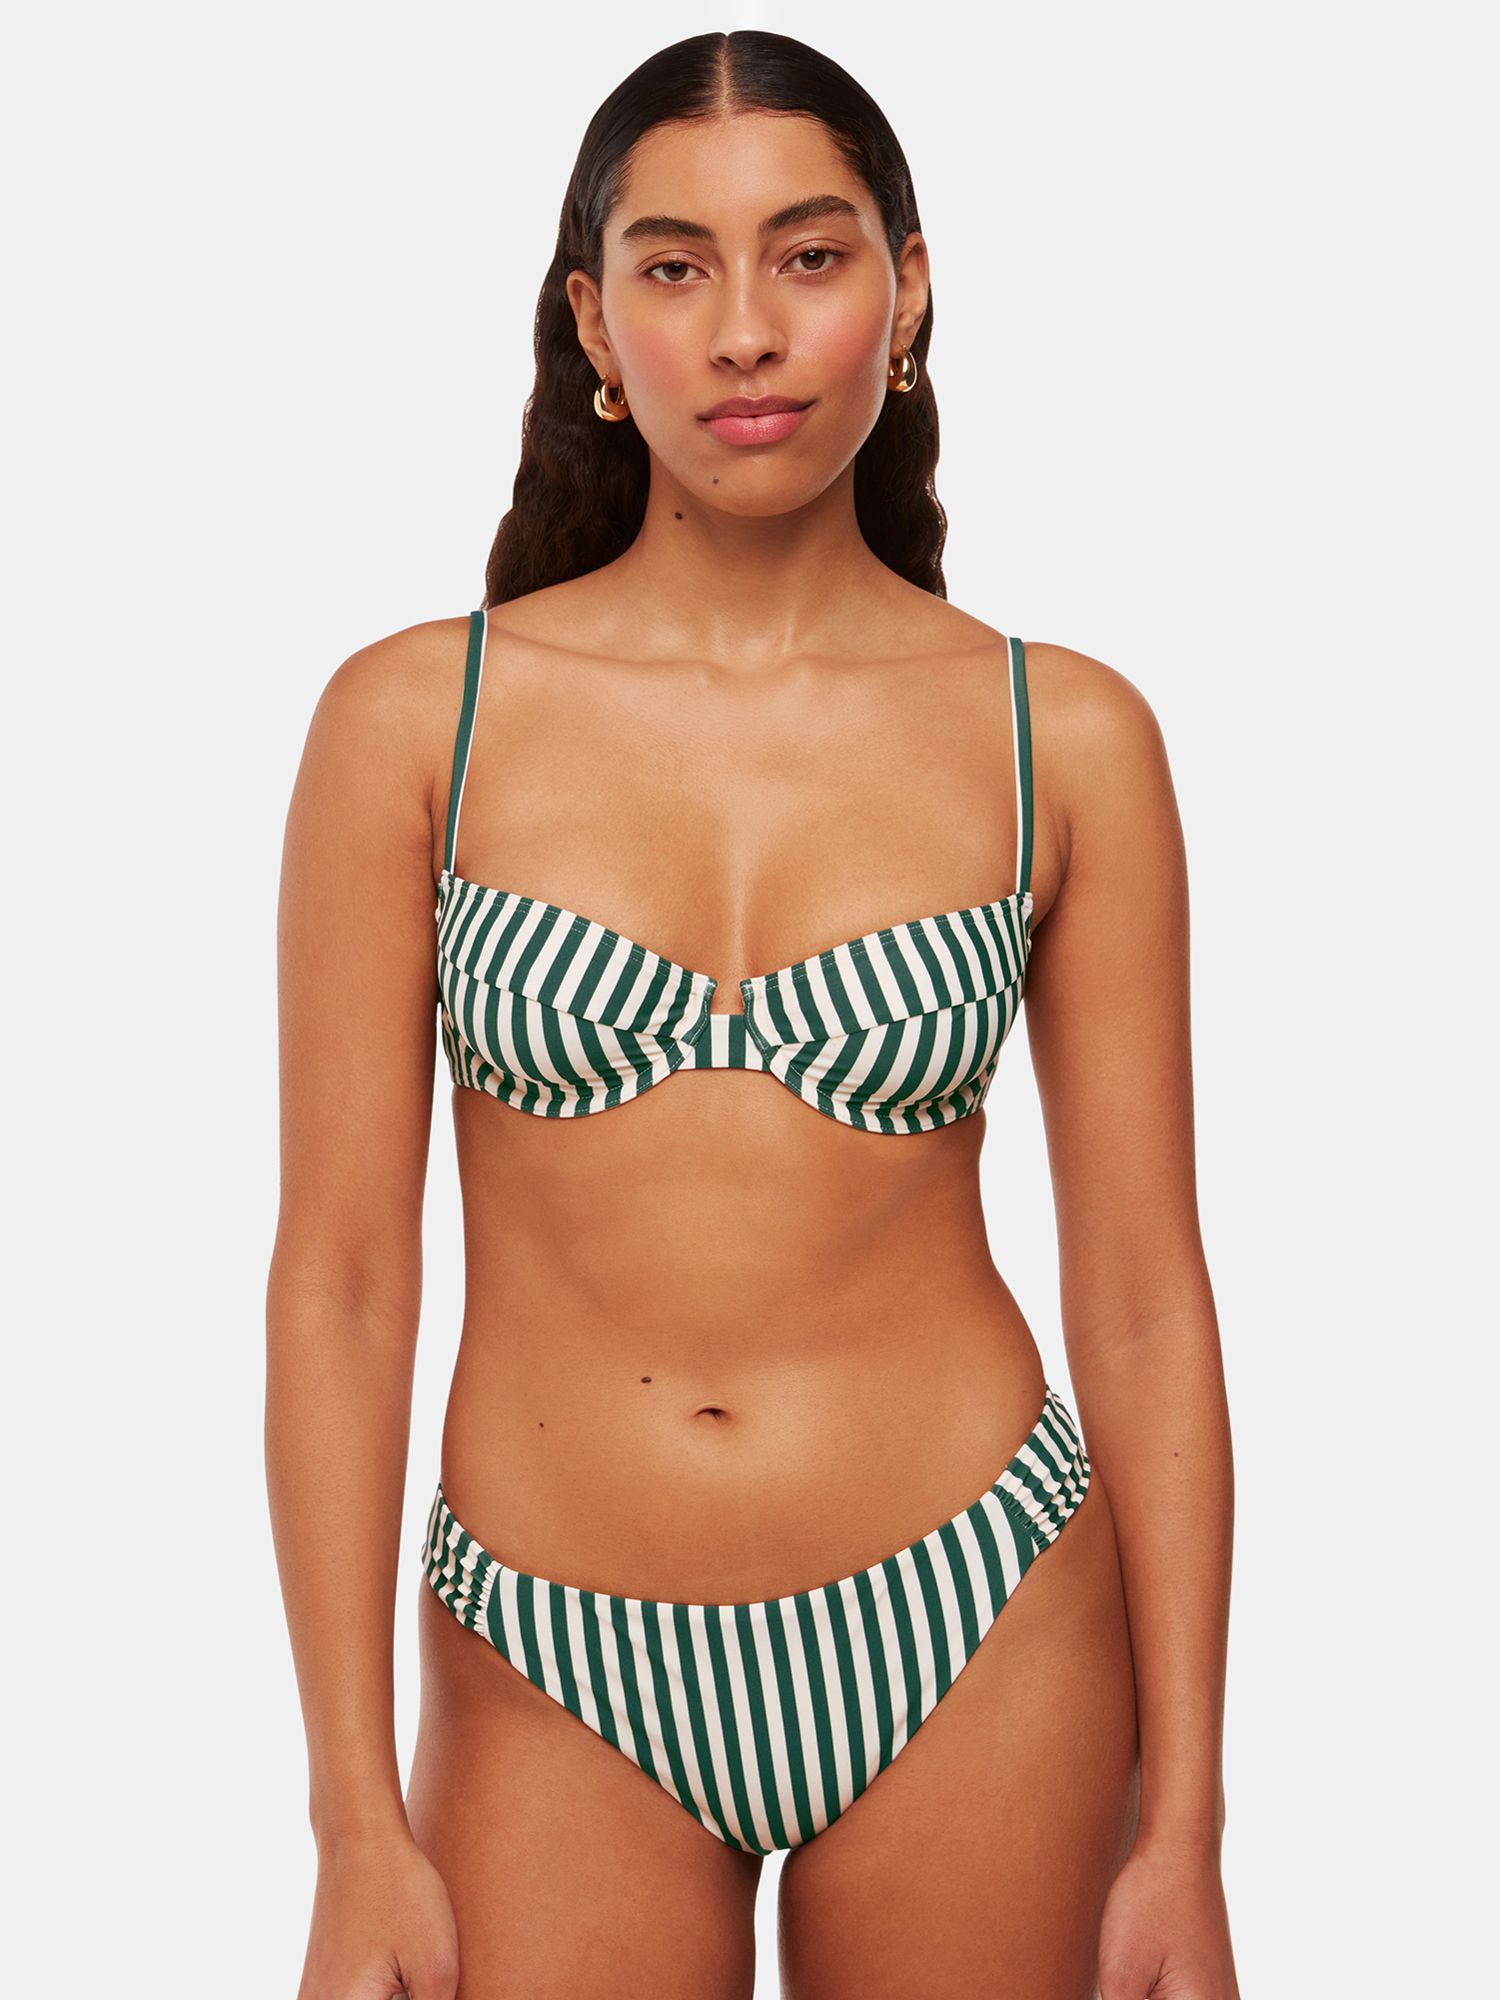 Whistles Striped Bikini Top, Green/White, 6